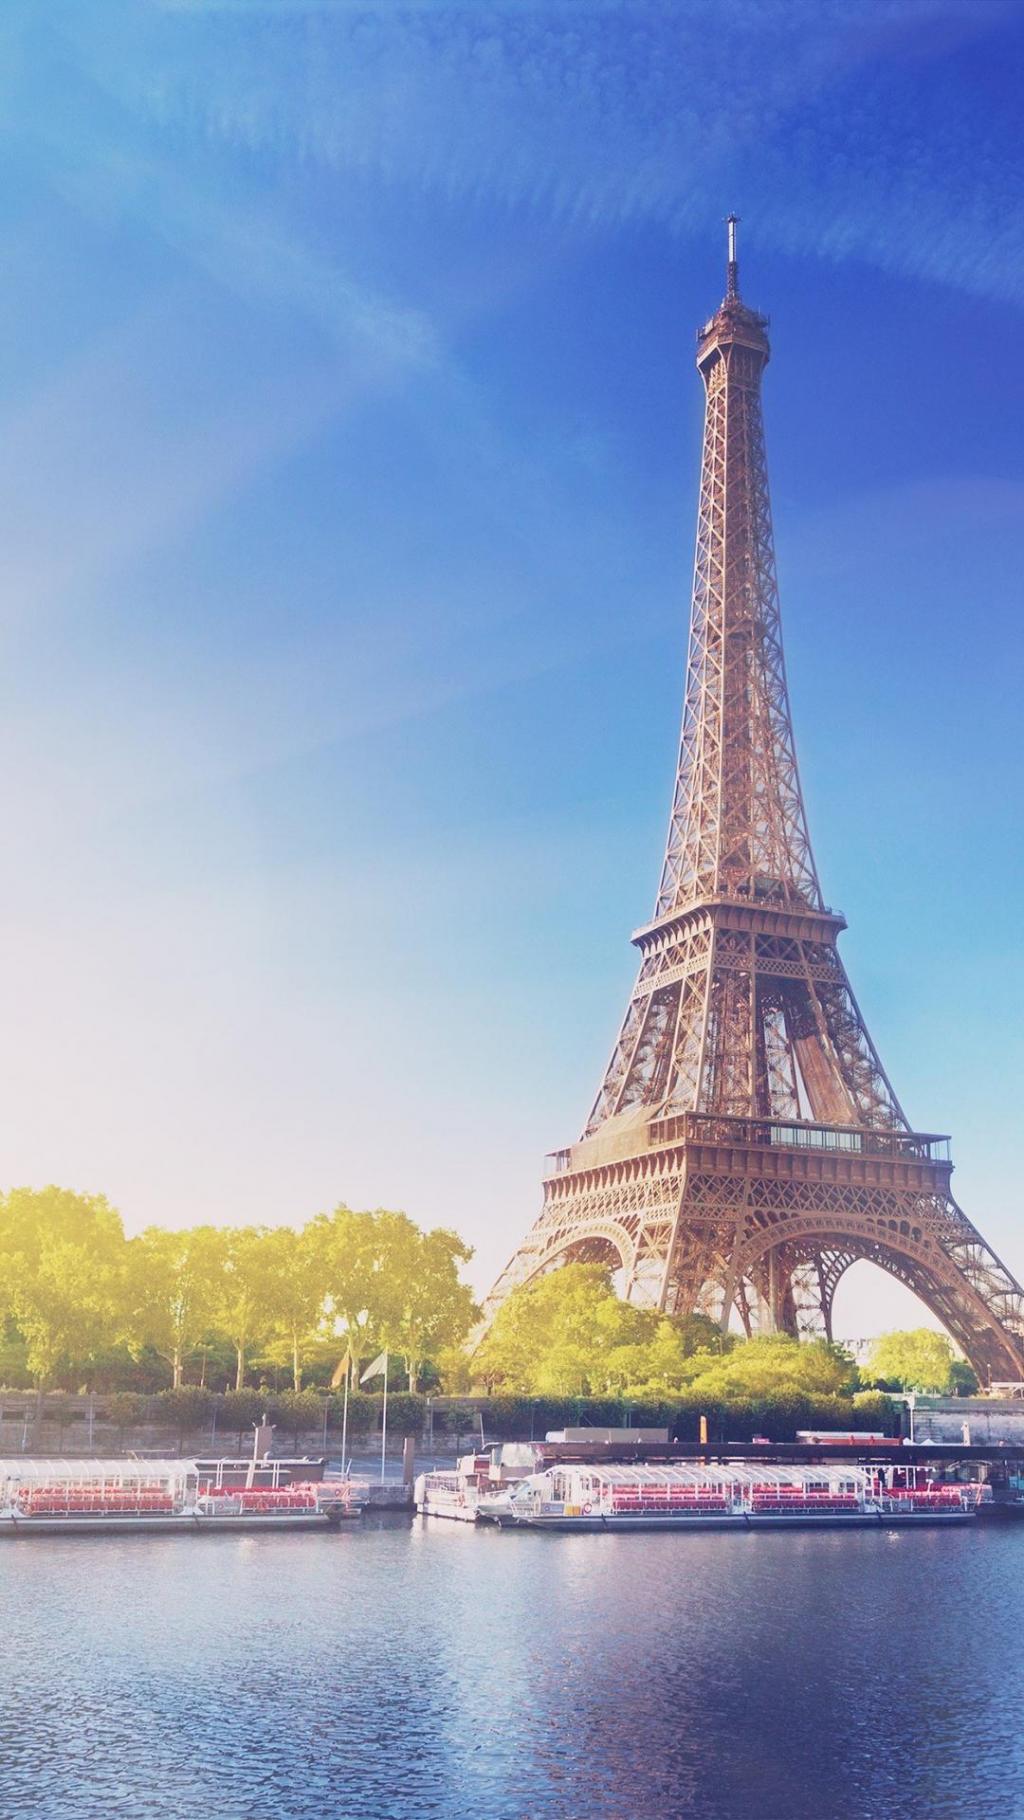 浪漫迷人的巴黎埃菲尔铁塔美景手机壁纸 手机壁纸 网页图库手机版